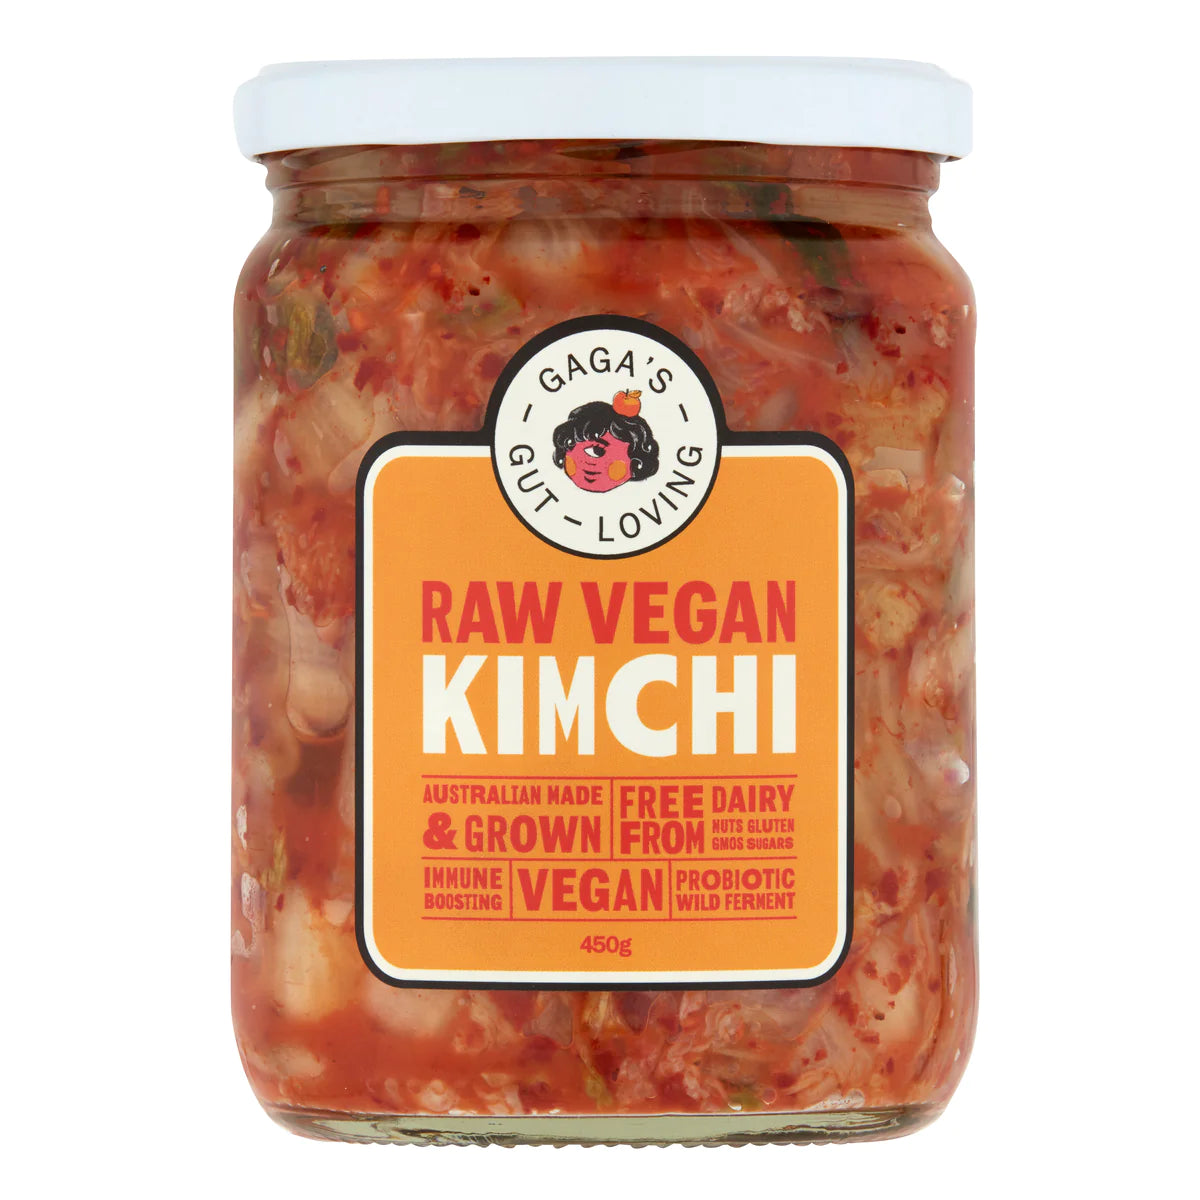 Gaga’s Raw Vegan Kimchi 450g